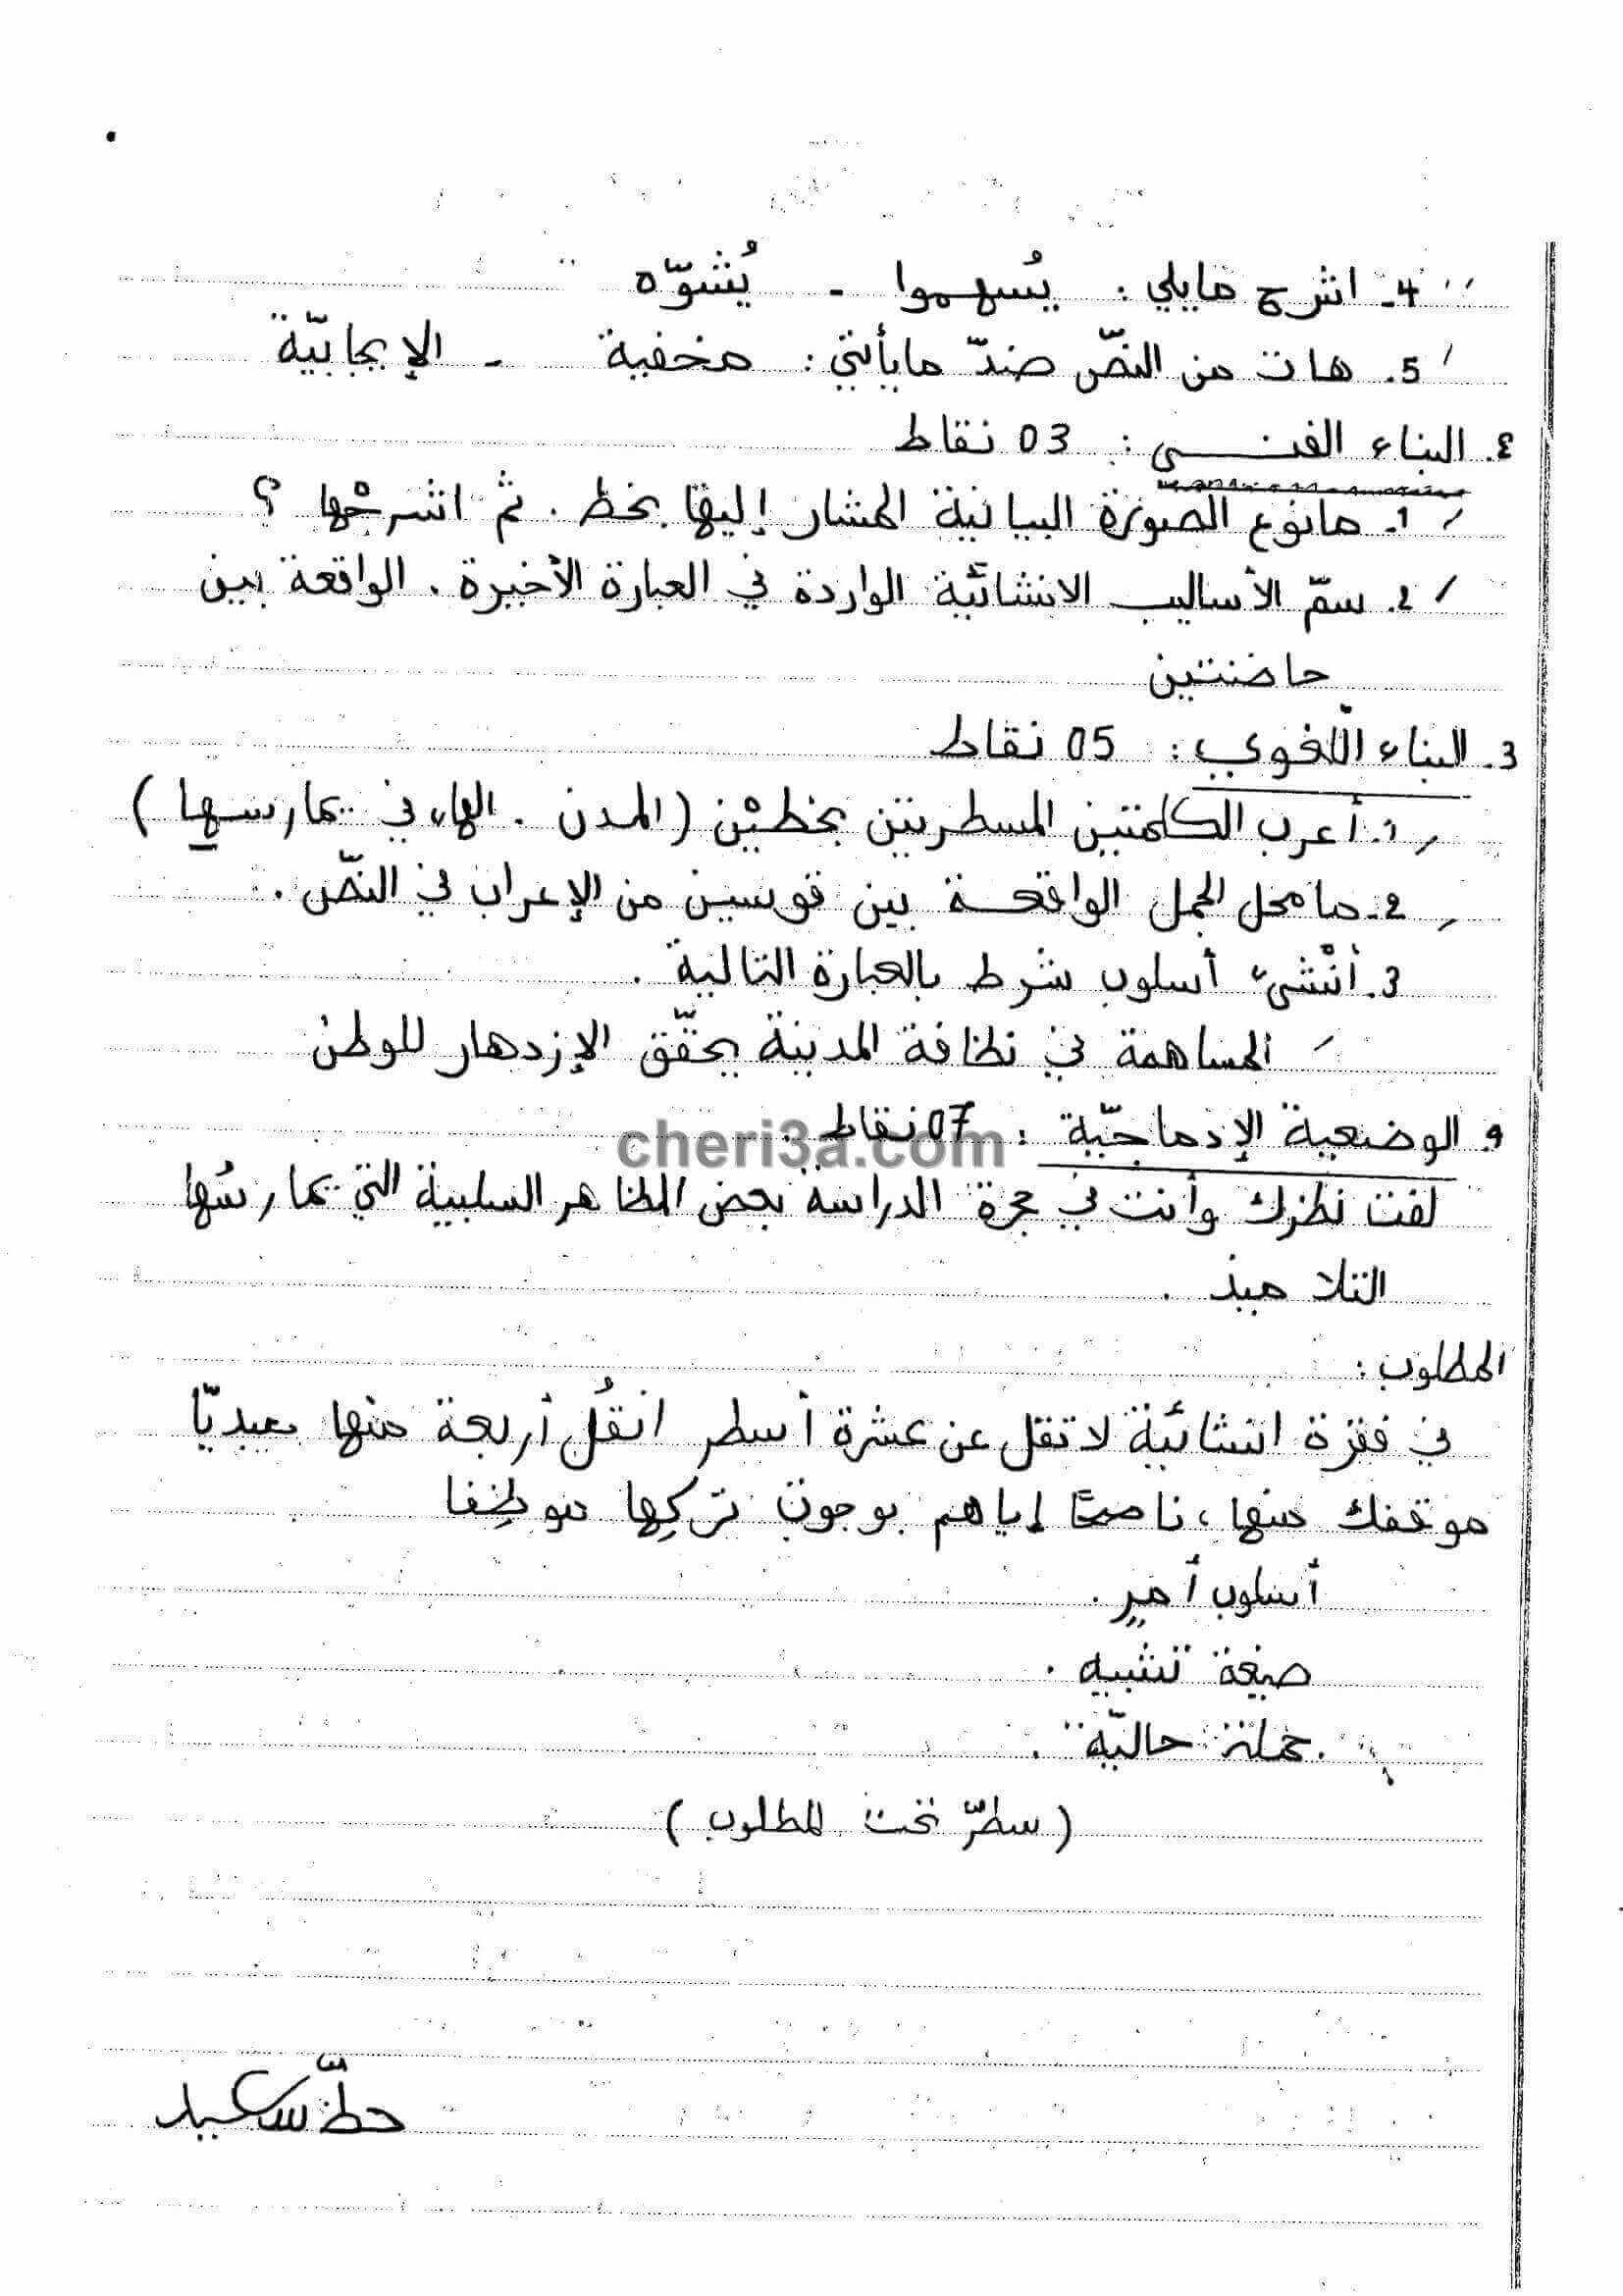 اختبار الفصل الاول للسنة الرابعة متوسط في اللغة العربية النموذج 3